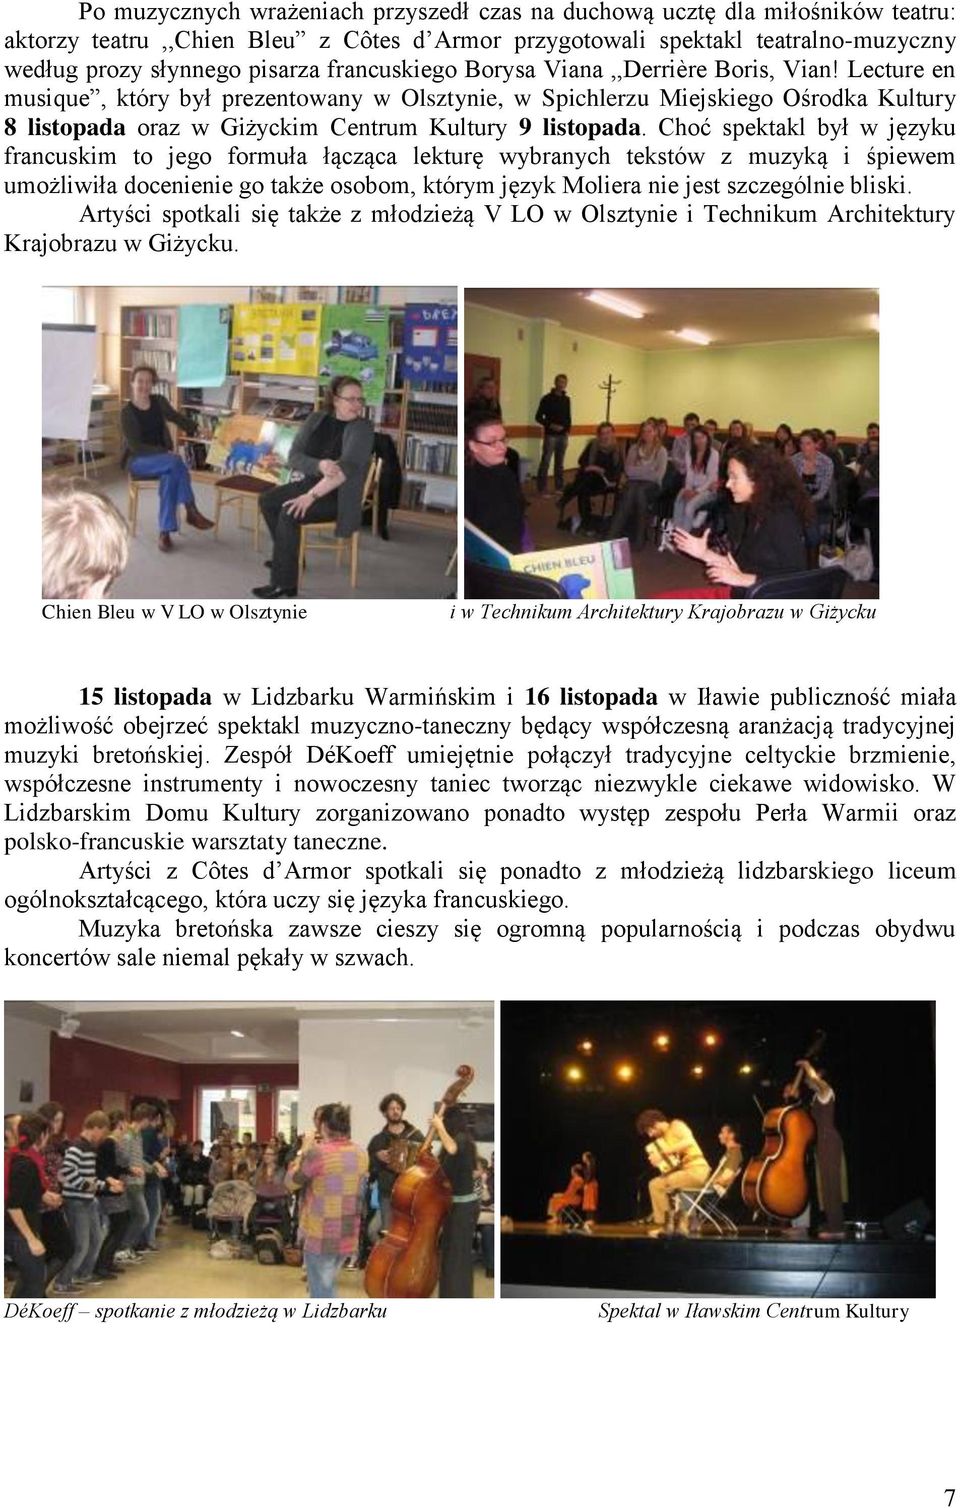 Lecture en musique, który był prezentowany w Olsztynie, w Spichlerzu Miejskiego Ośrodka Kultury 8 listopada oraz w Giżyckim Centrum Kultury 9 listopada.